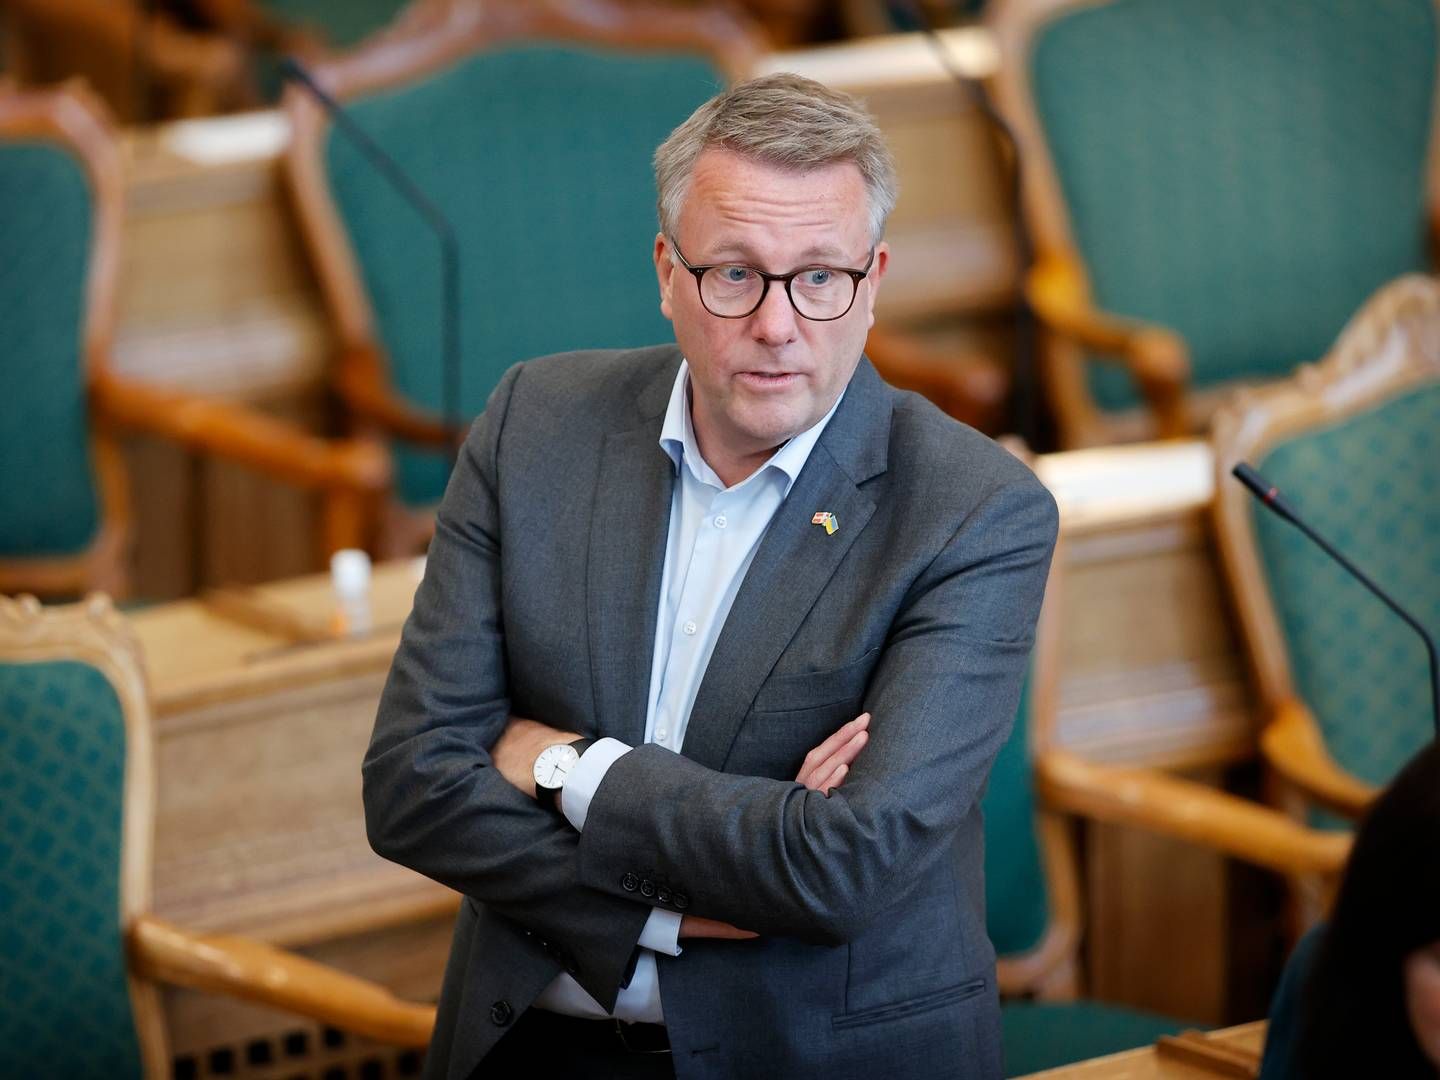 Erhvervsminister Morten Bødskov (S) kan ikke kommentere konkurrencesagen om Totalkredit, da det bliver behandlet af Konkurrence- og Forbrugerstyrelsen, der er en uafhængig myndighed. | Foto: Jens Dresling/Ritzau Scanpix